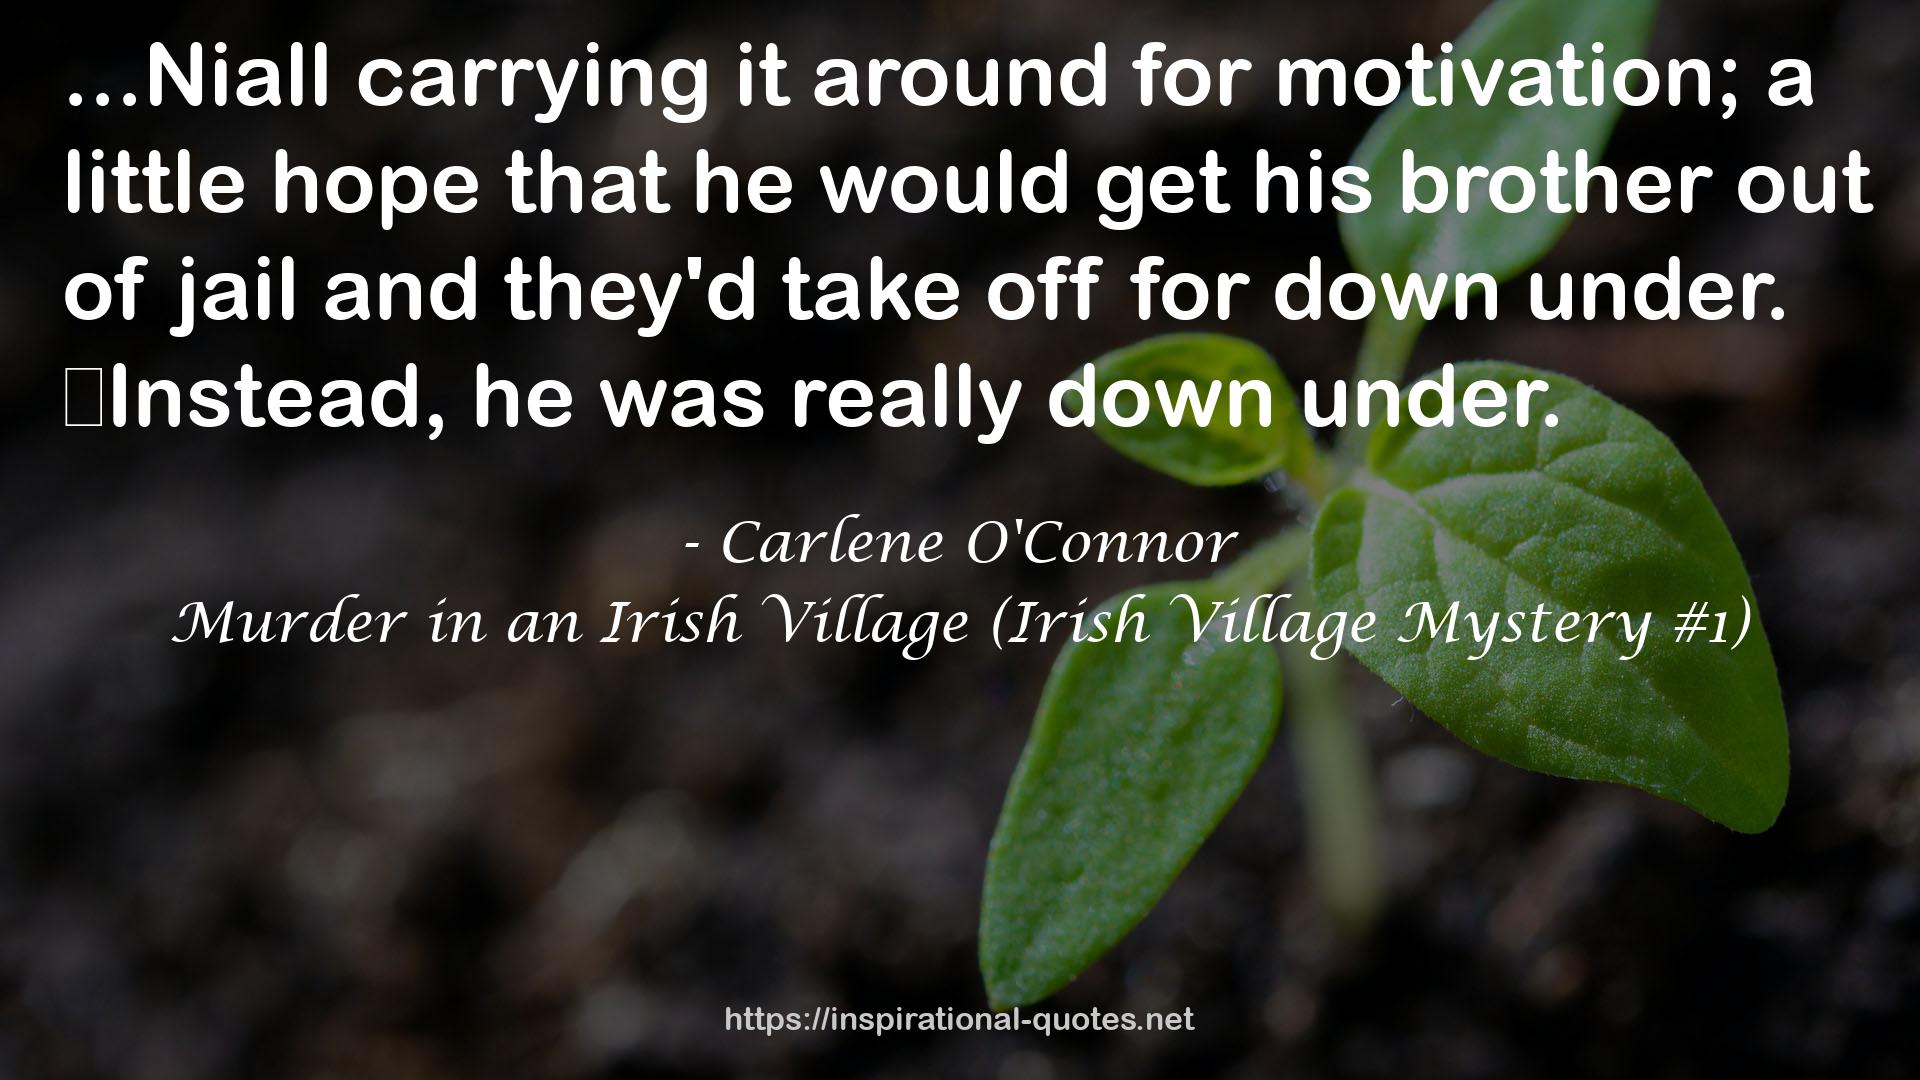 Murder in an Irish Village (Irish Village Mystery #1) QUOTES